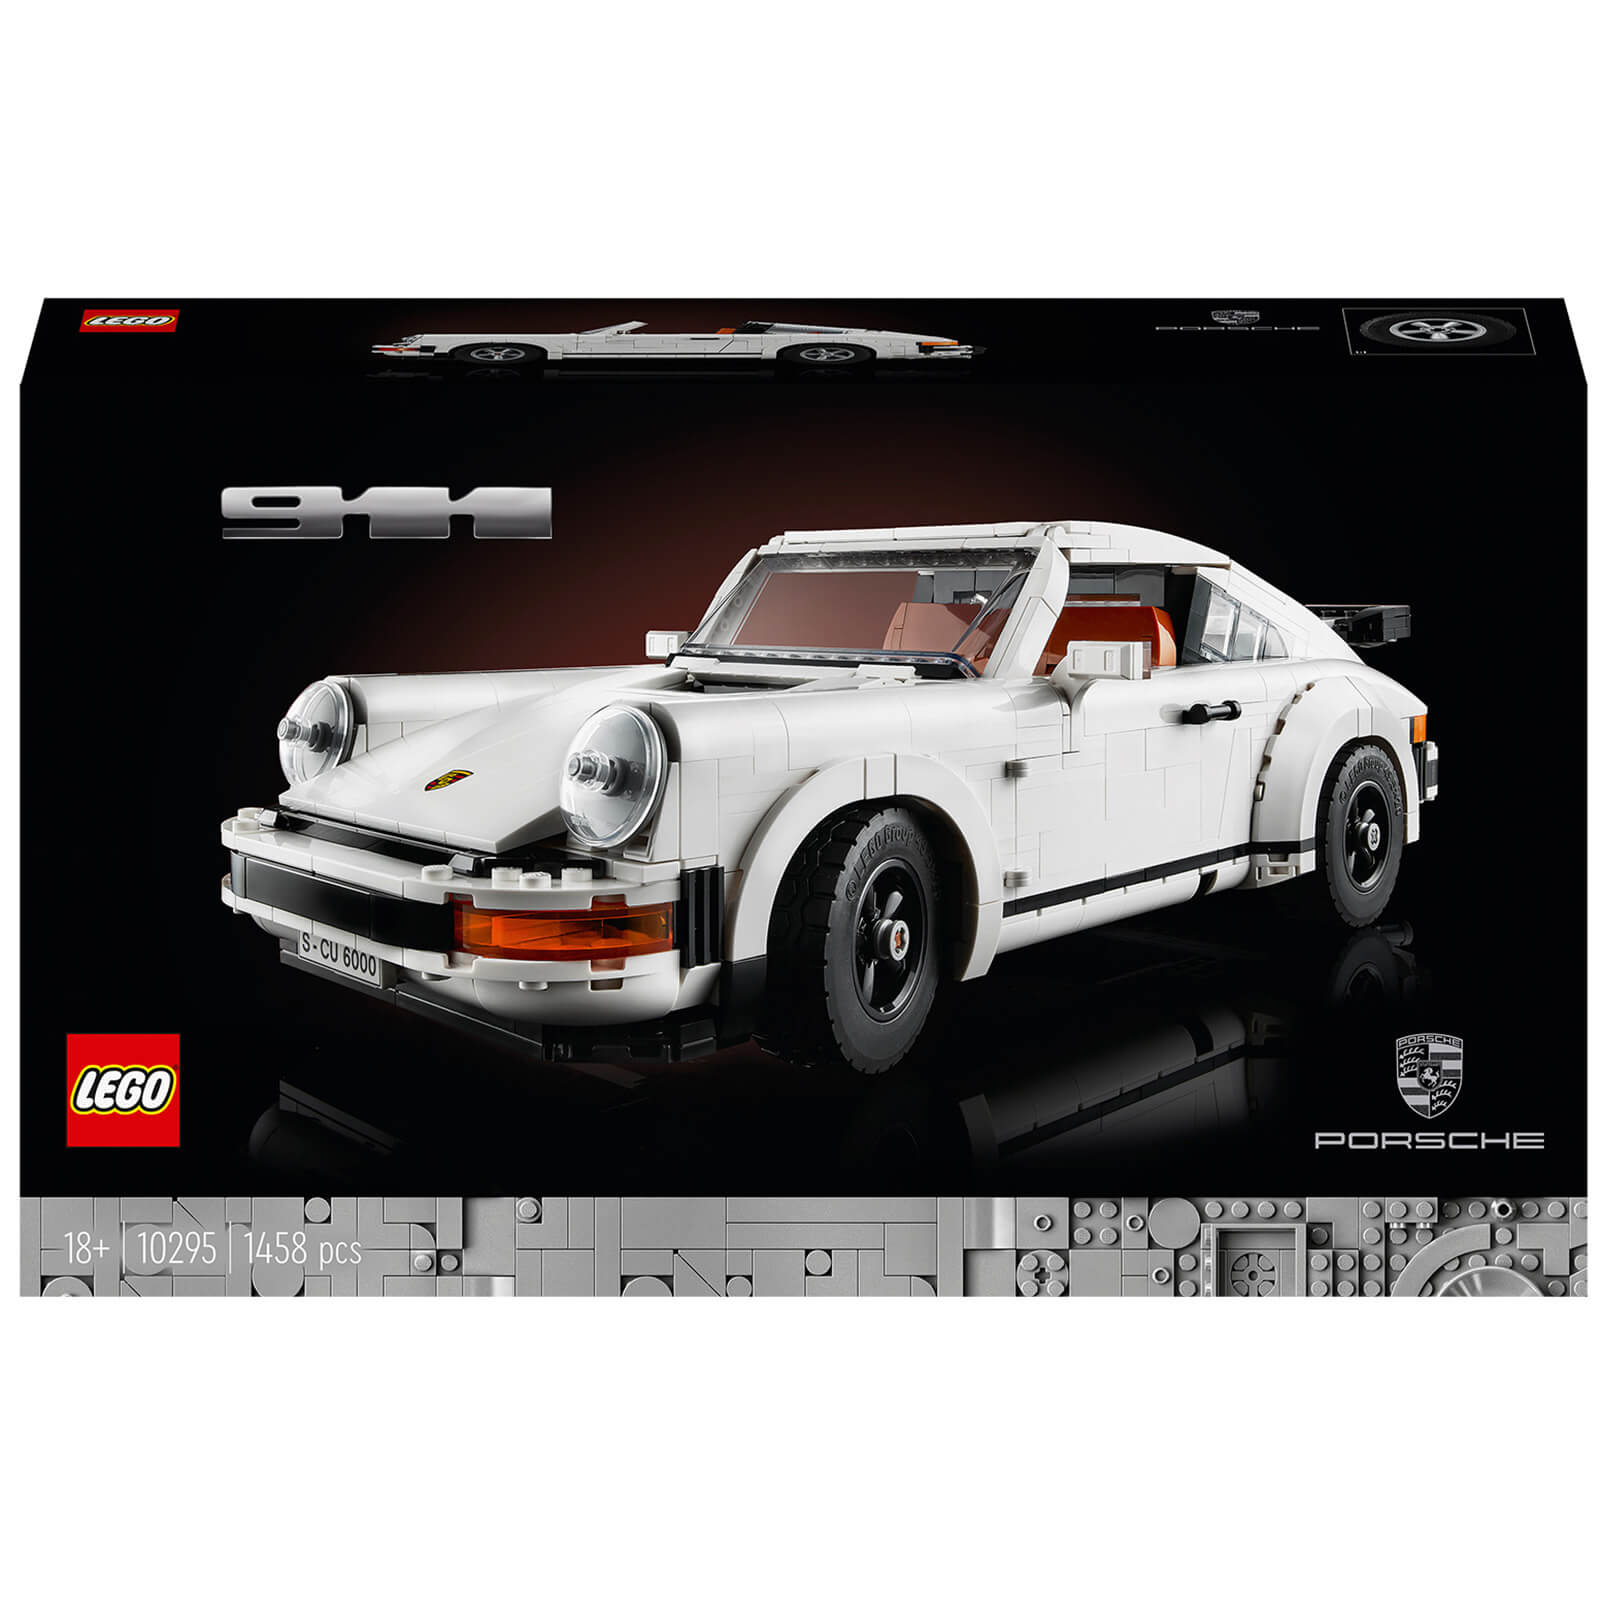 Image of LEGO Creator Expert: Porsche 911 Collectable Model (10295)